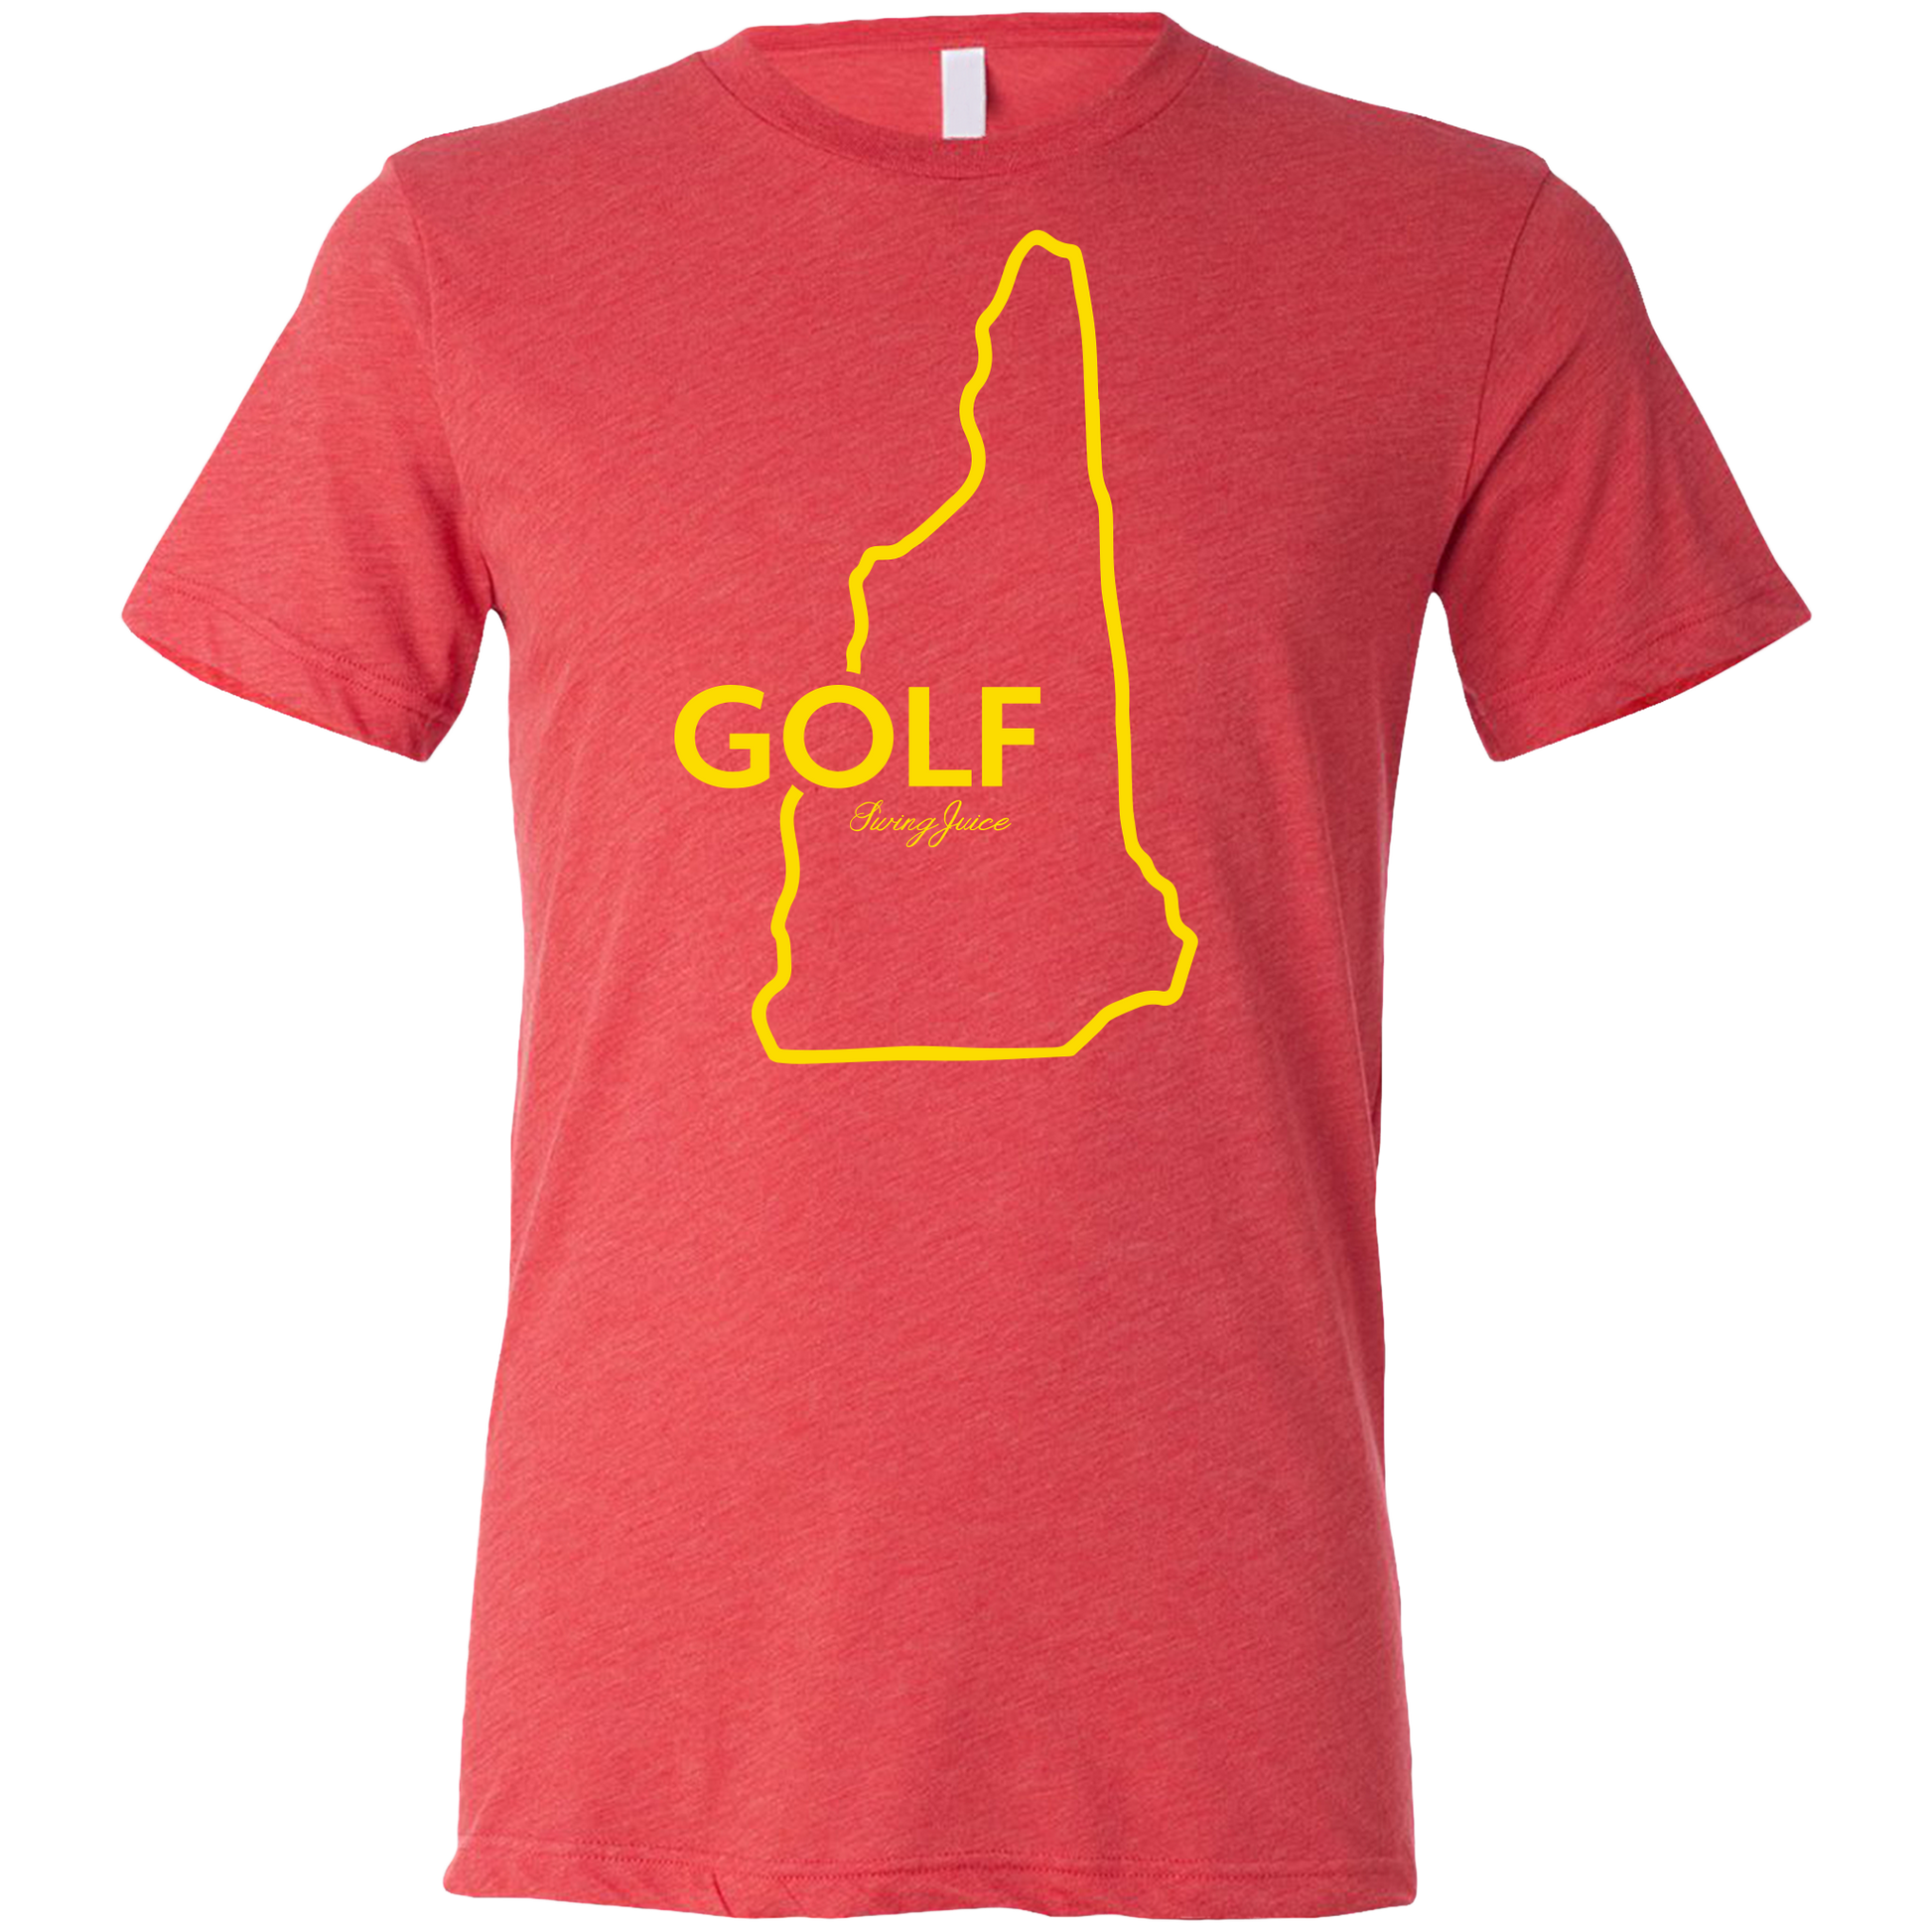 Golf New Hampshire Unisex T-Shirt SwingJuice